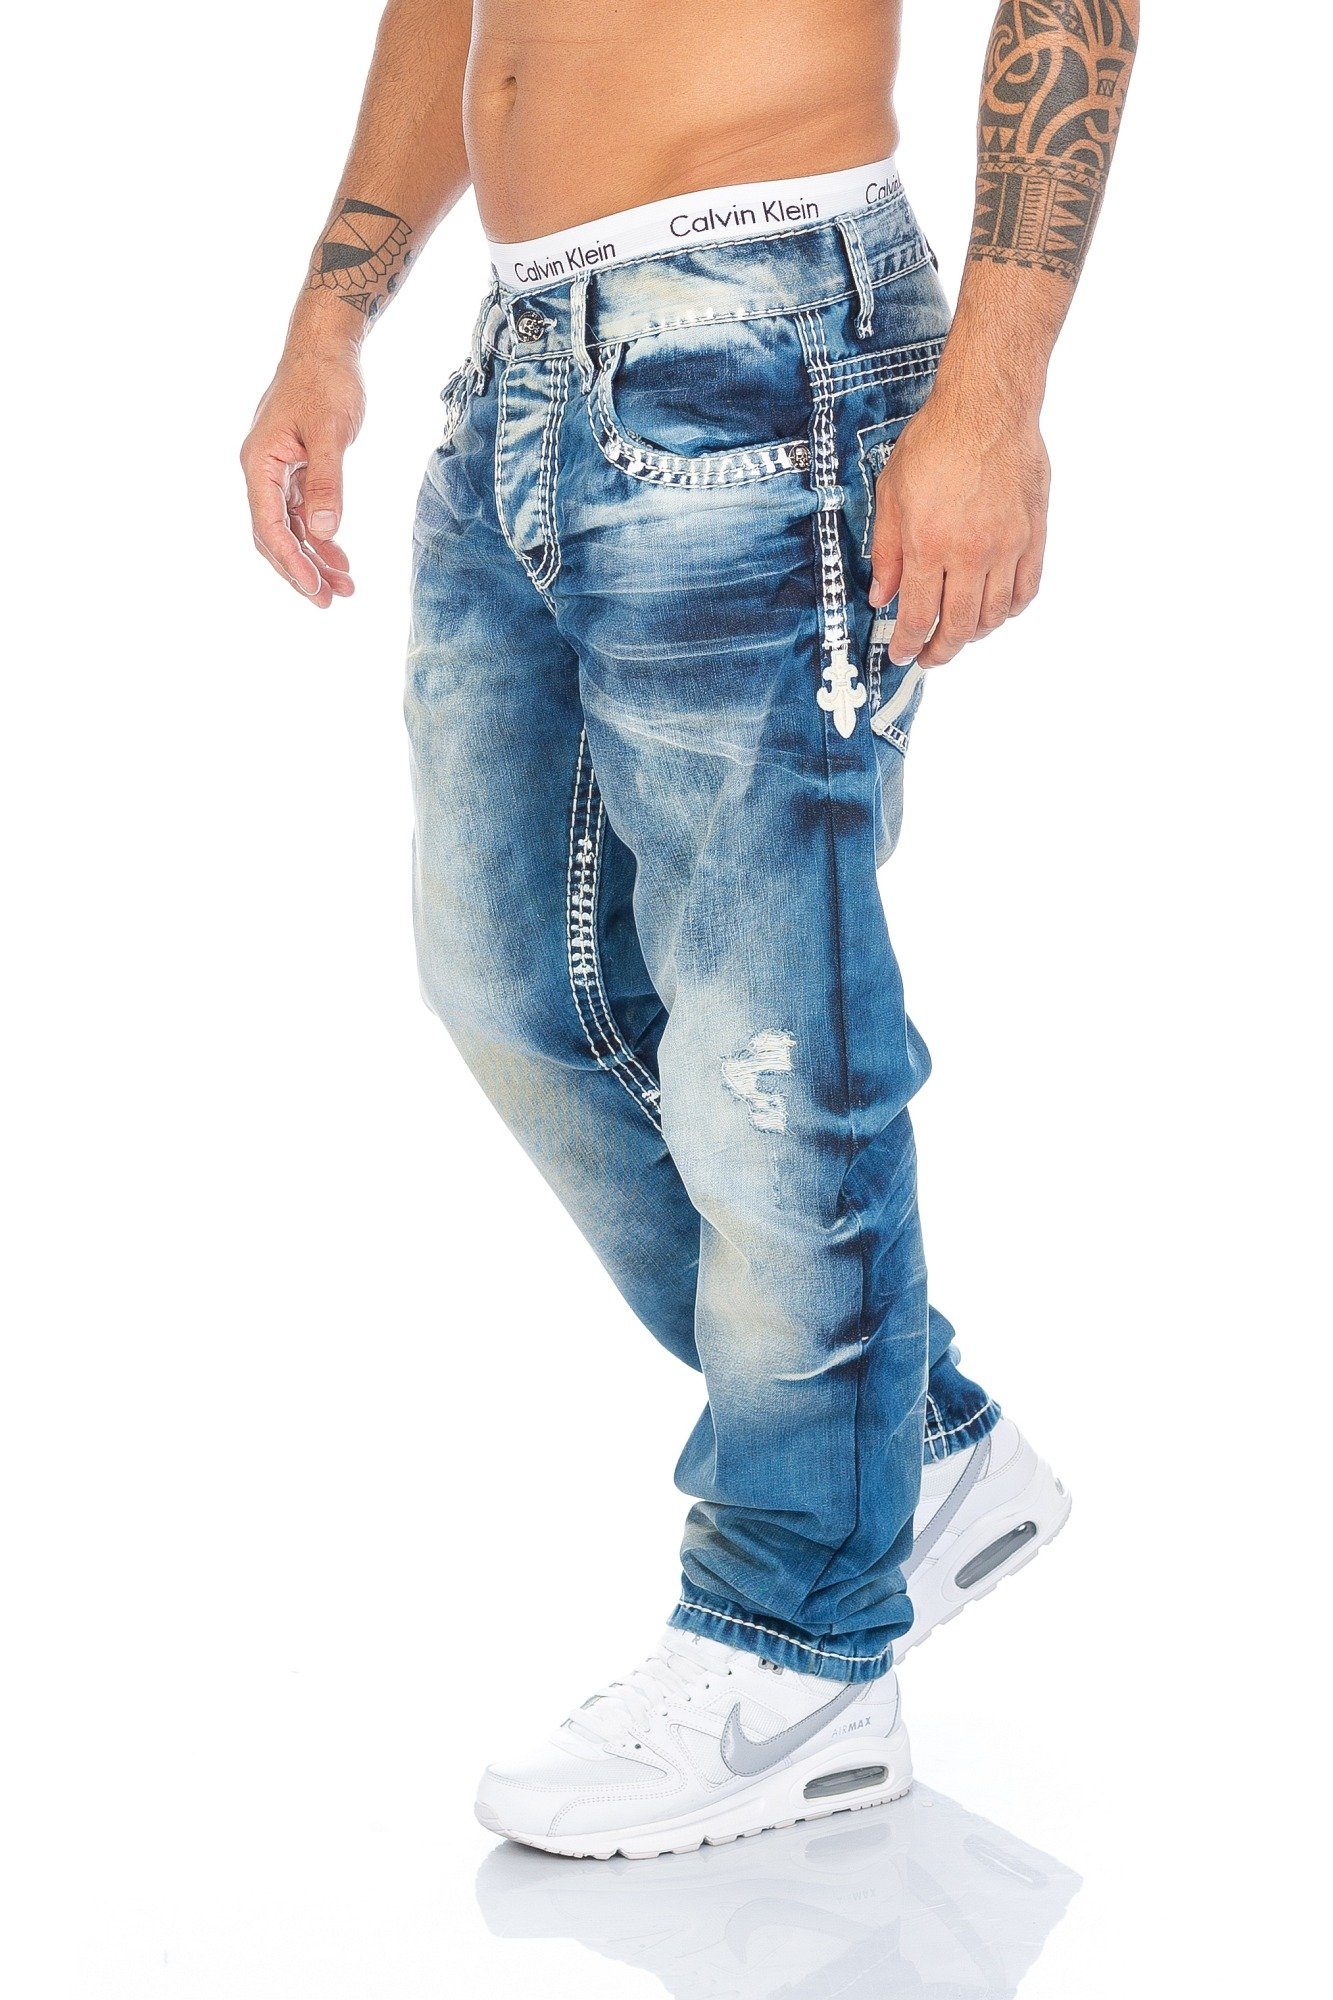 Den Briga Odskočit schwarze jeans mit weißen nähten rýč Fiktivní předsudek